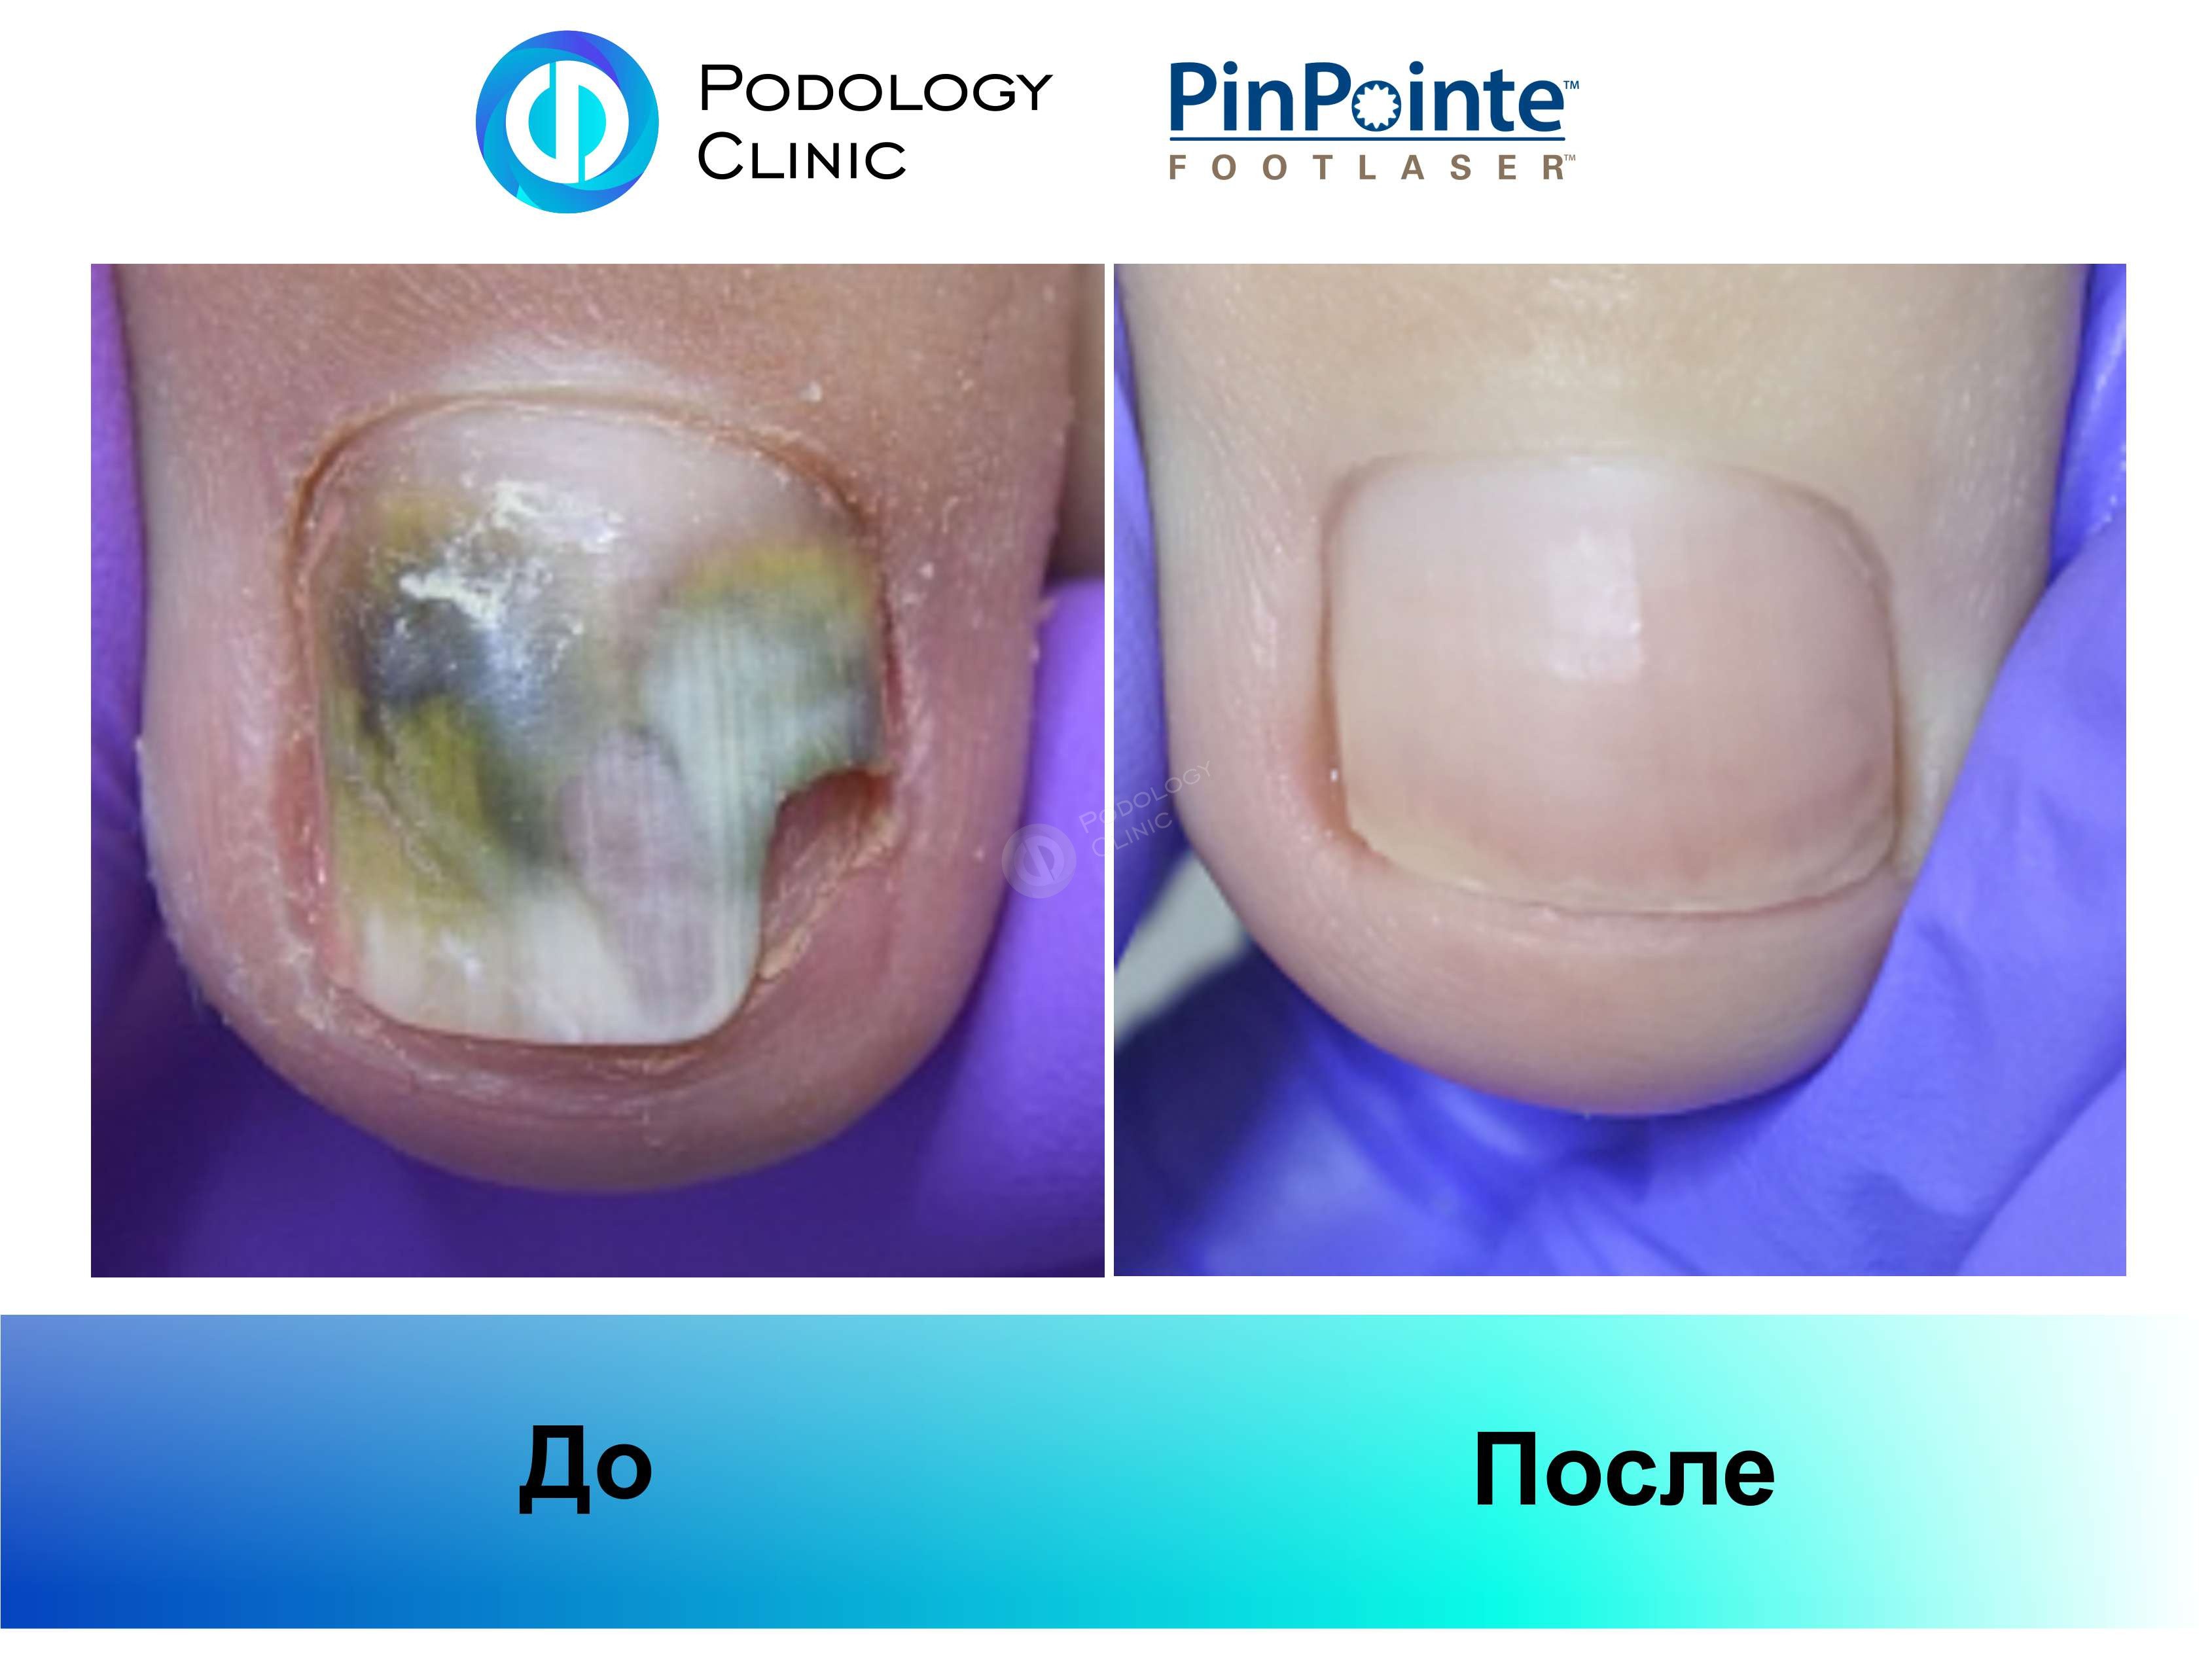 Примеры работы лазера PinPointe FootLaser в лечении онихомикоза, фото 3